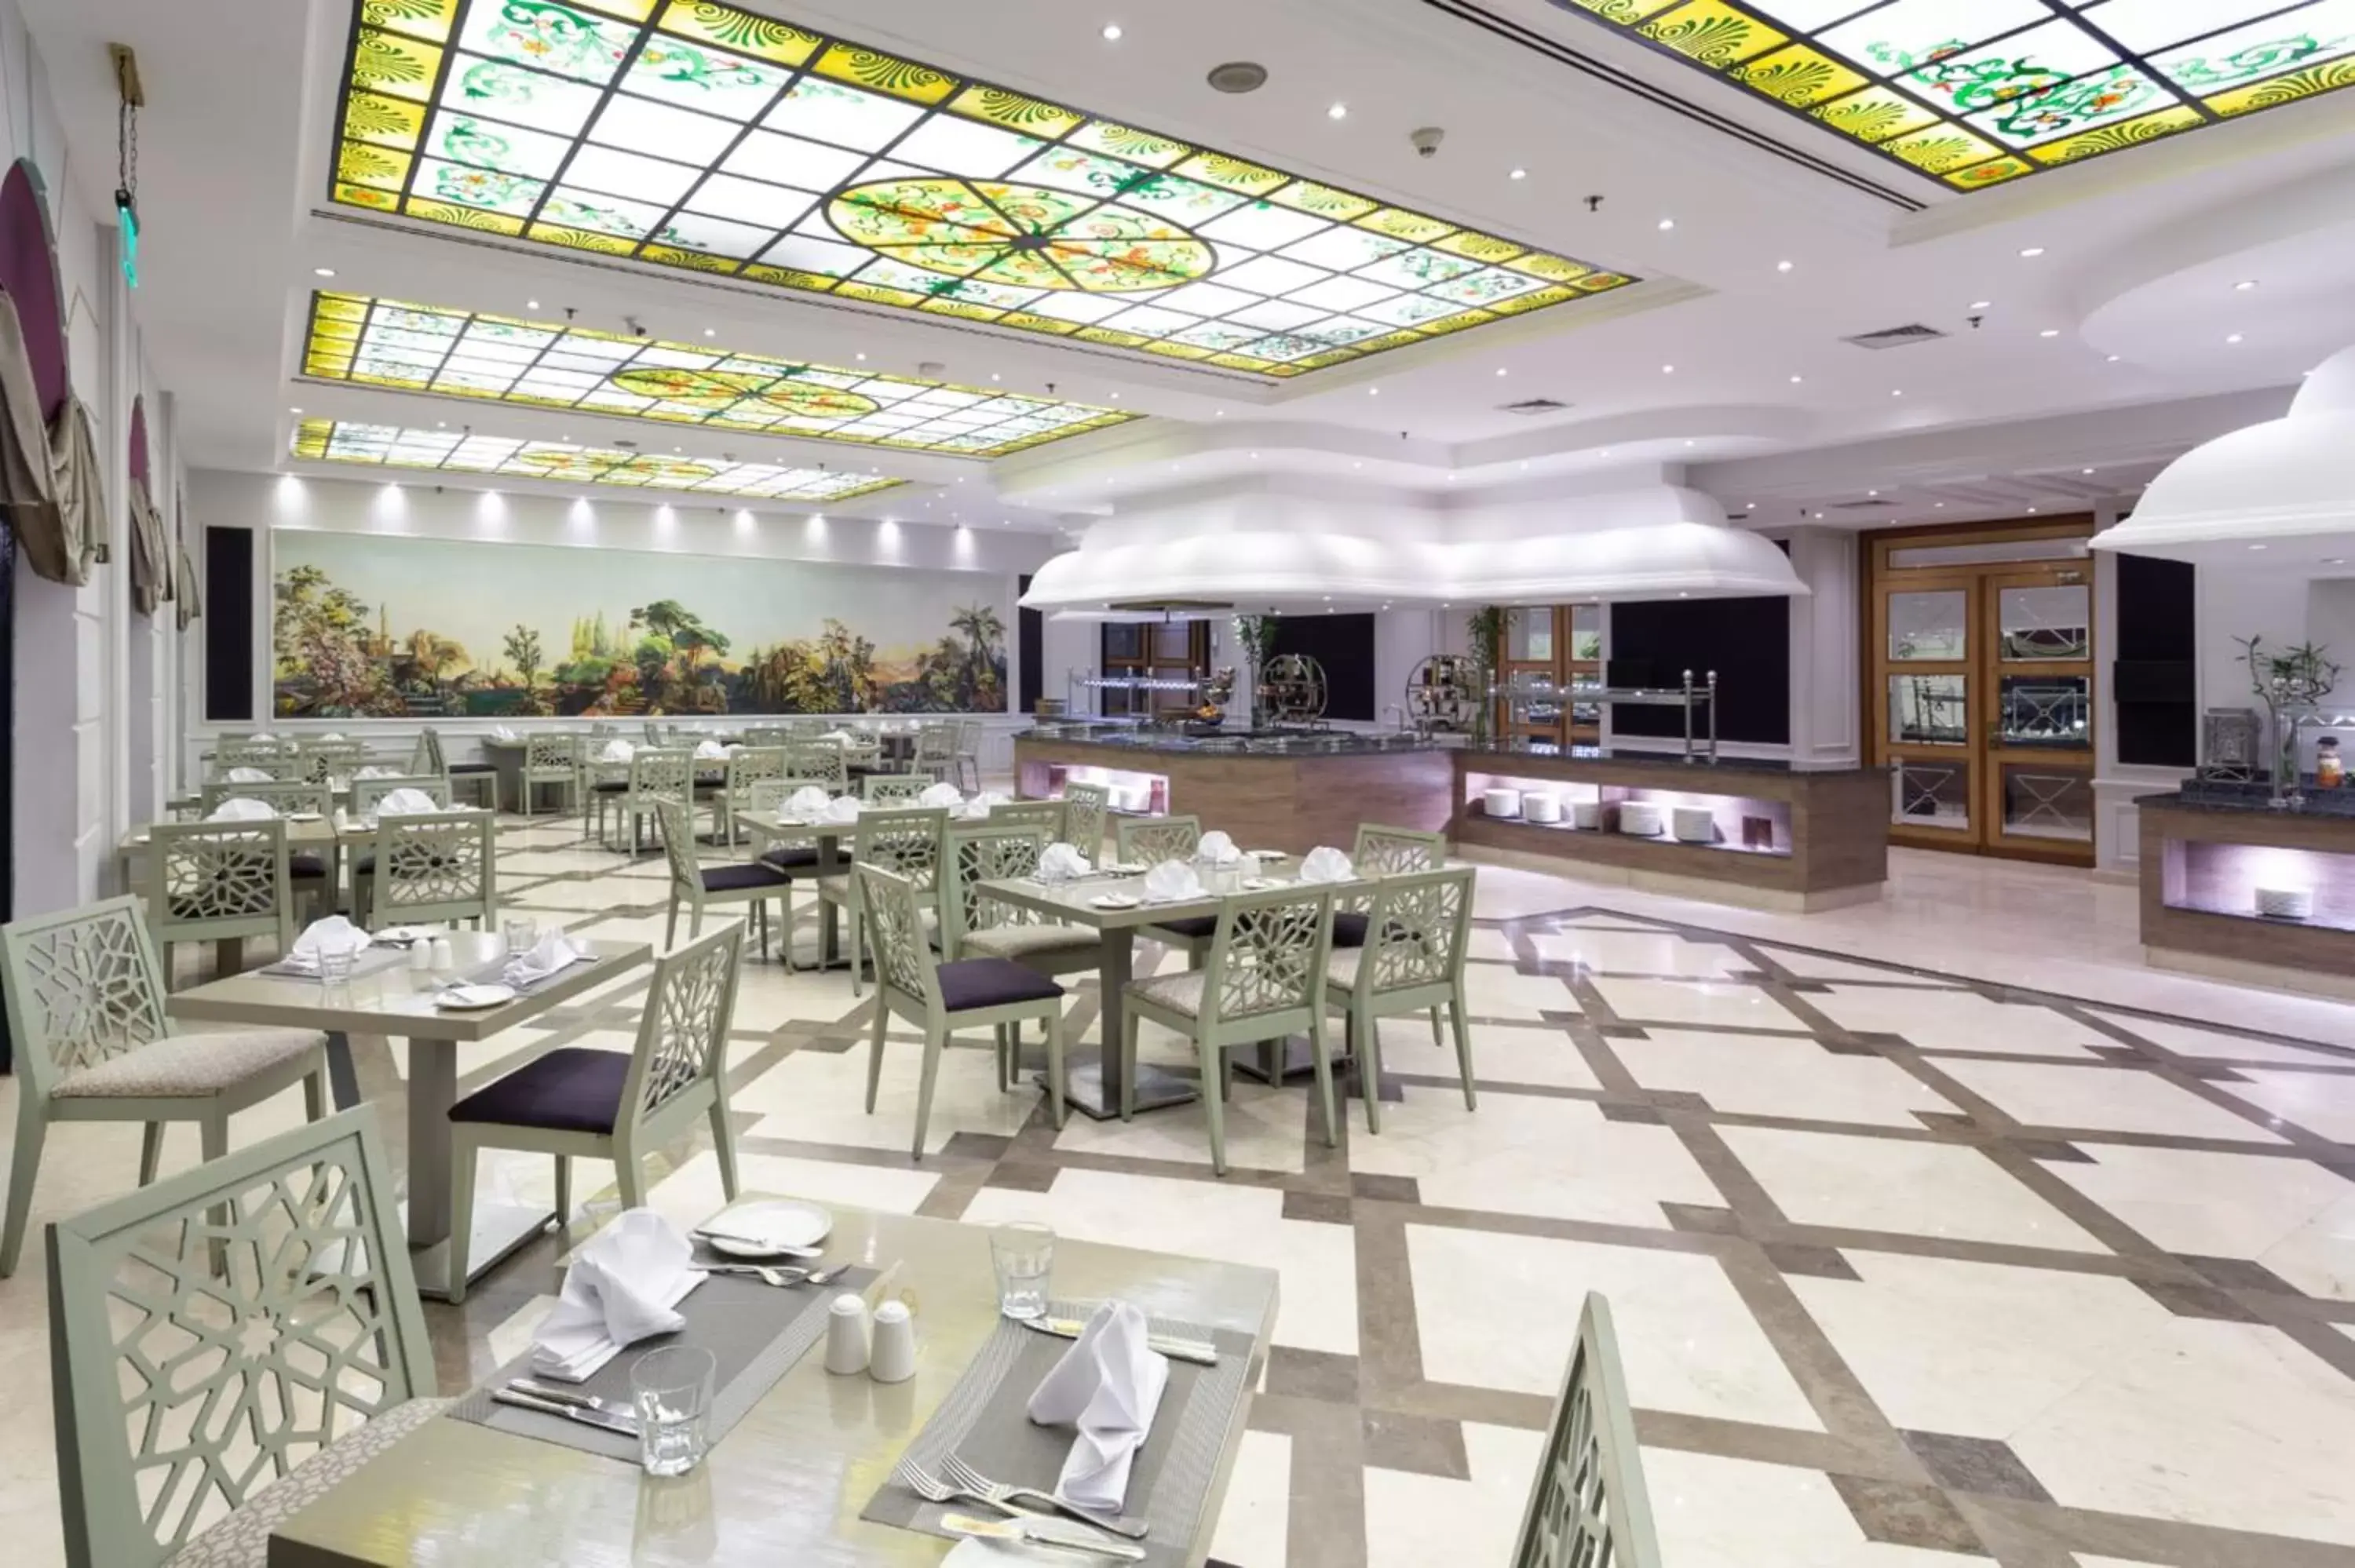 Restaurant/Places to Eat in Concorde El Salam Cairo Hotel & Casino